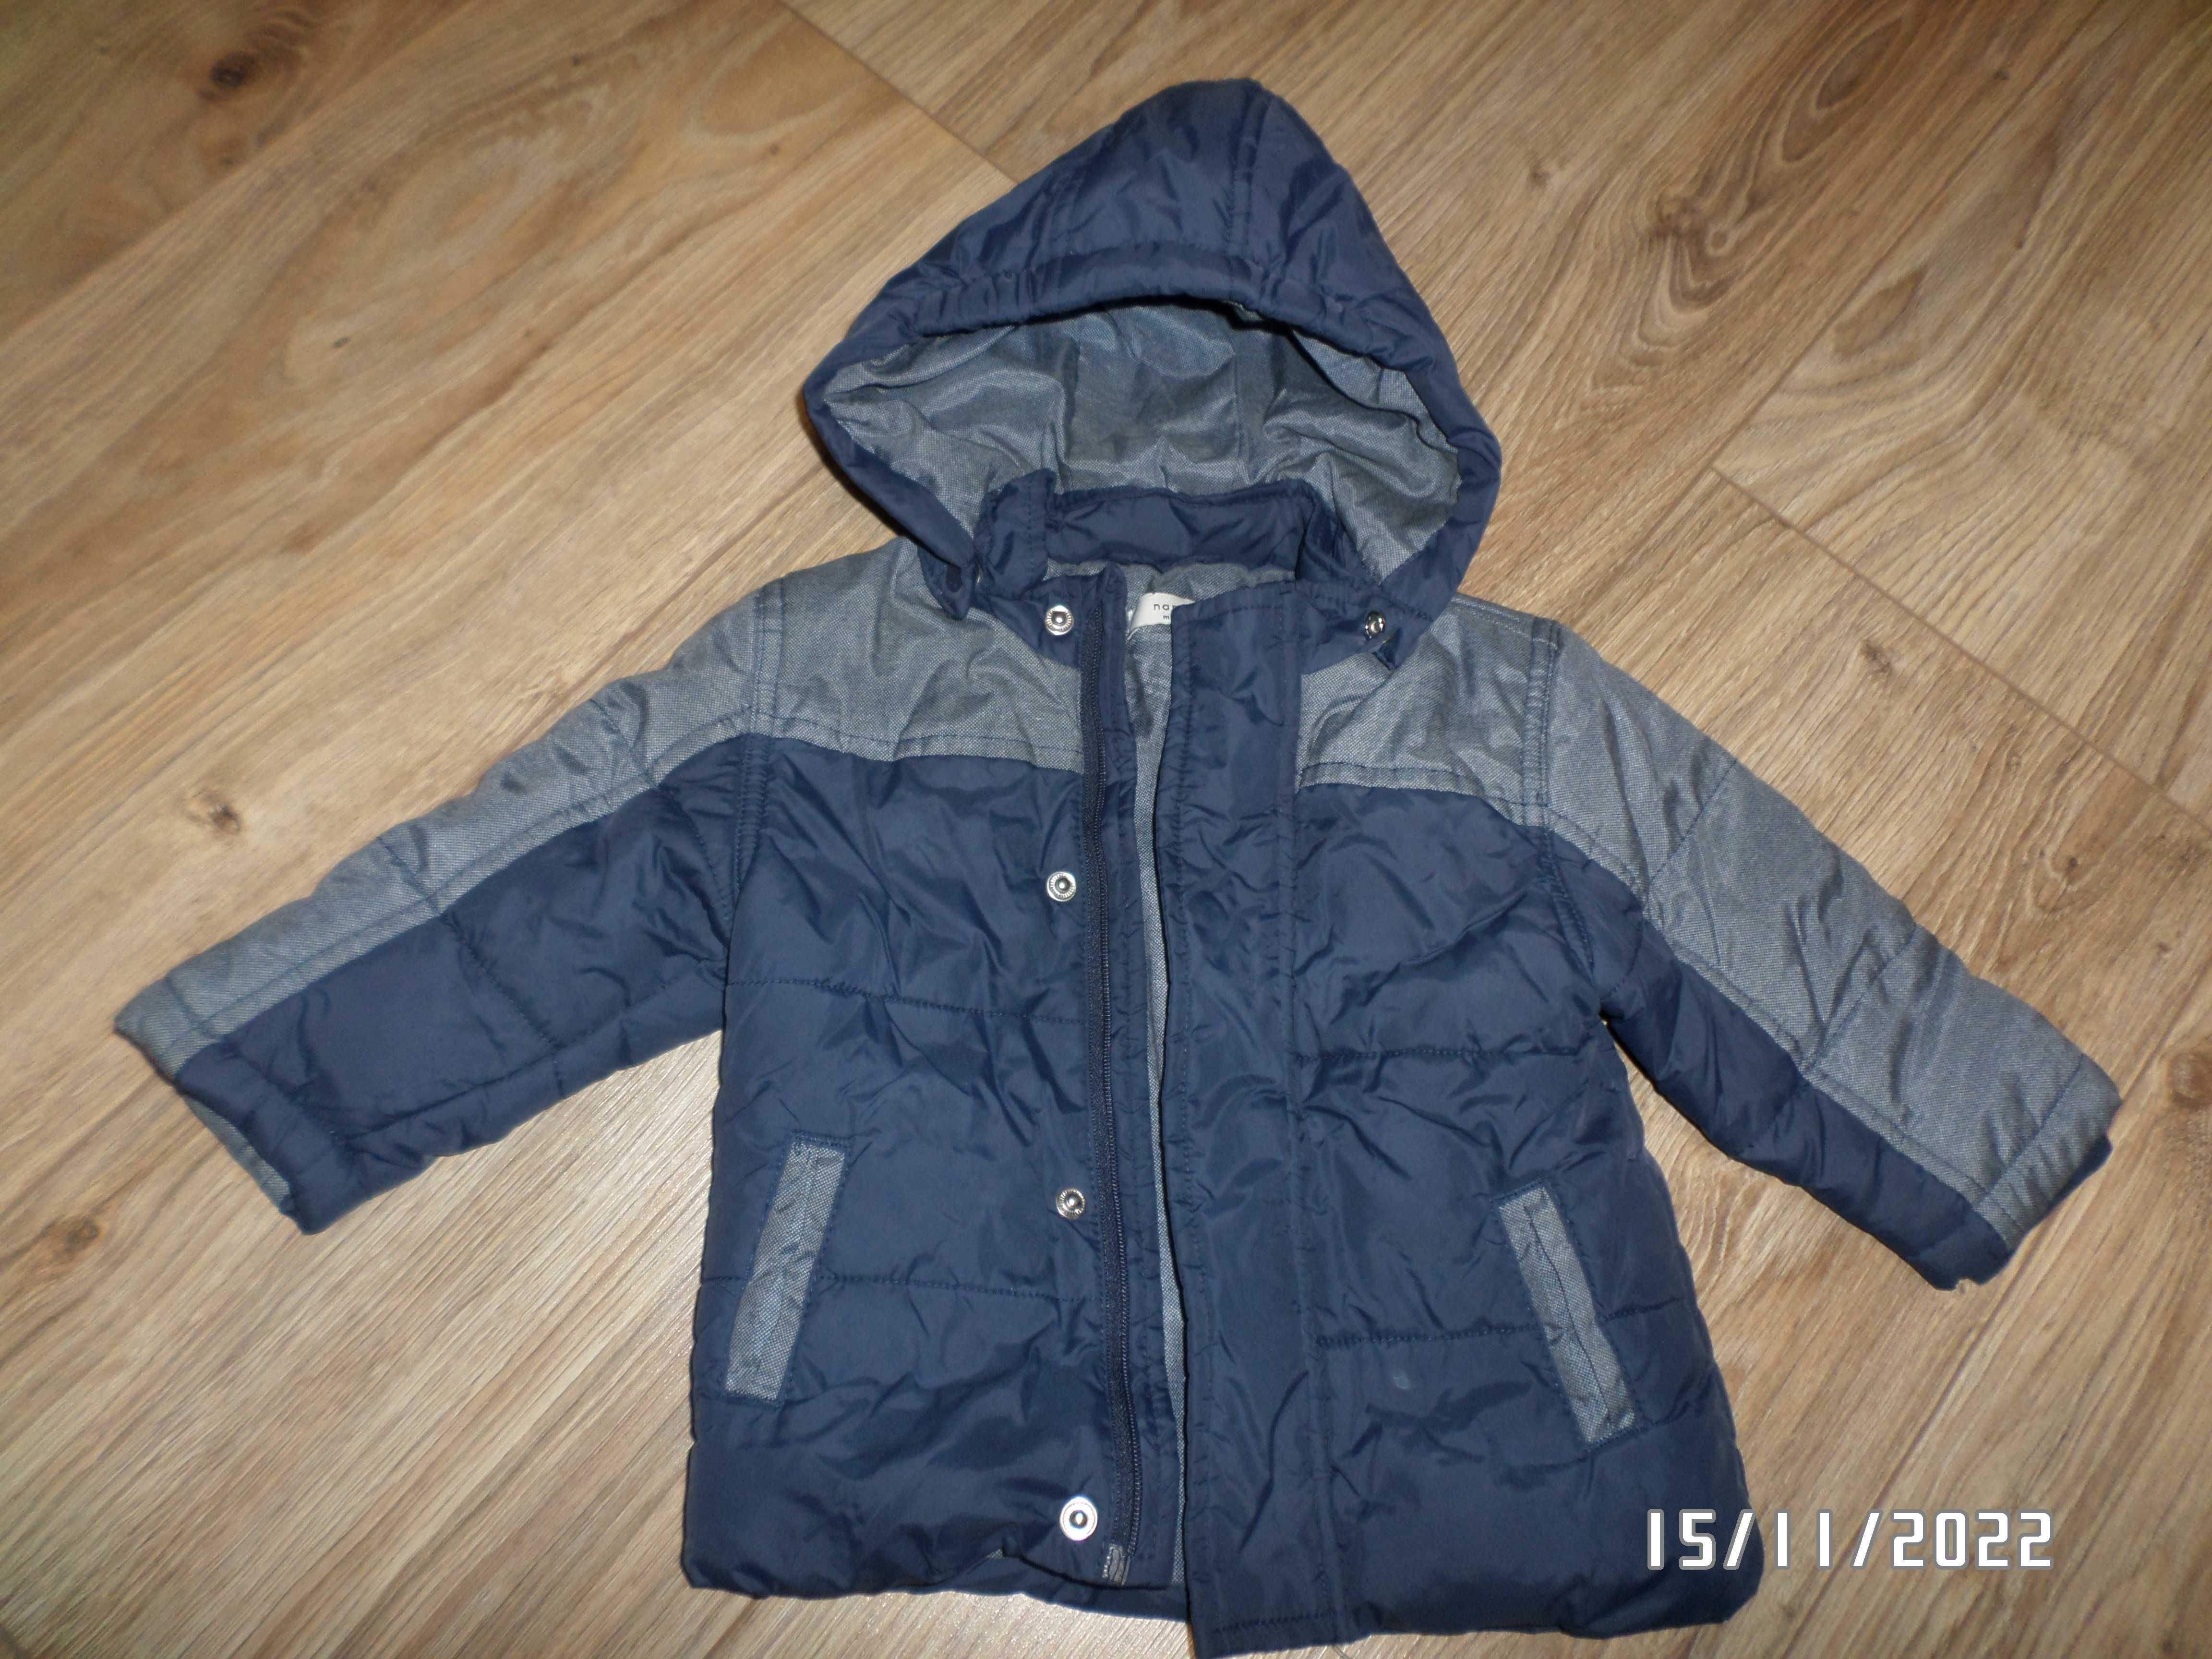 zimowa kurtka dla chłopca-rozmiar-68cm-4-6 miesięcy